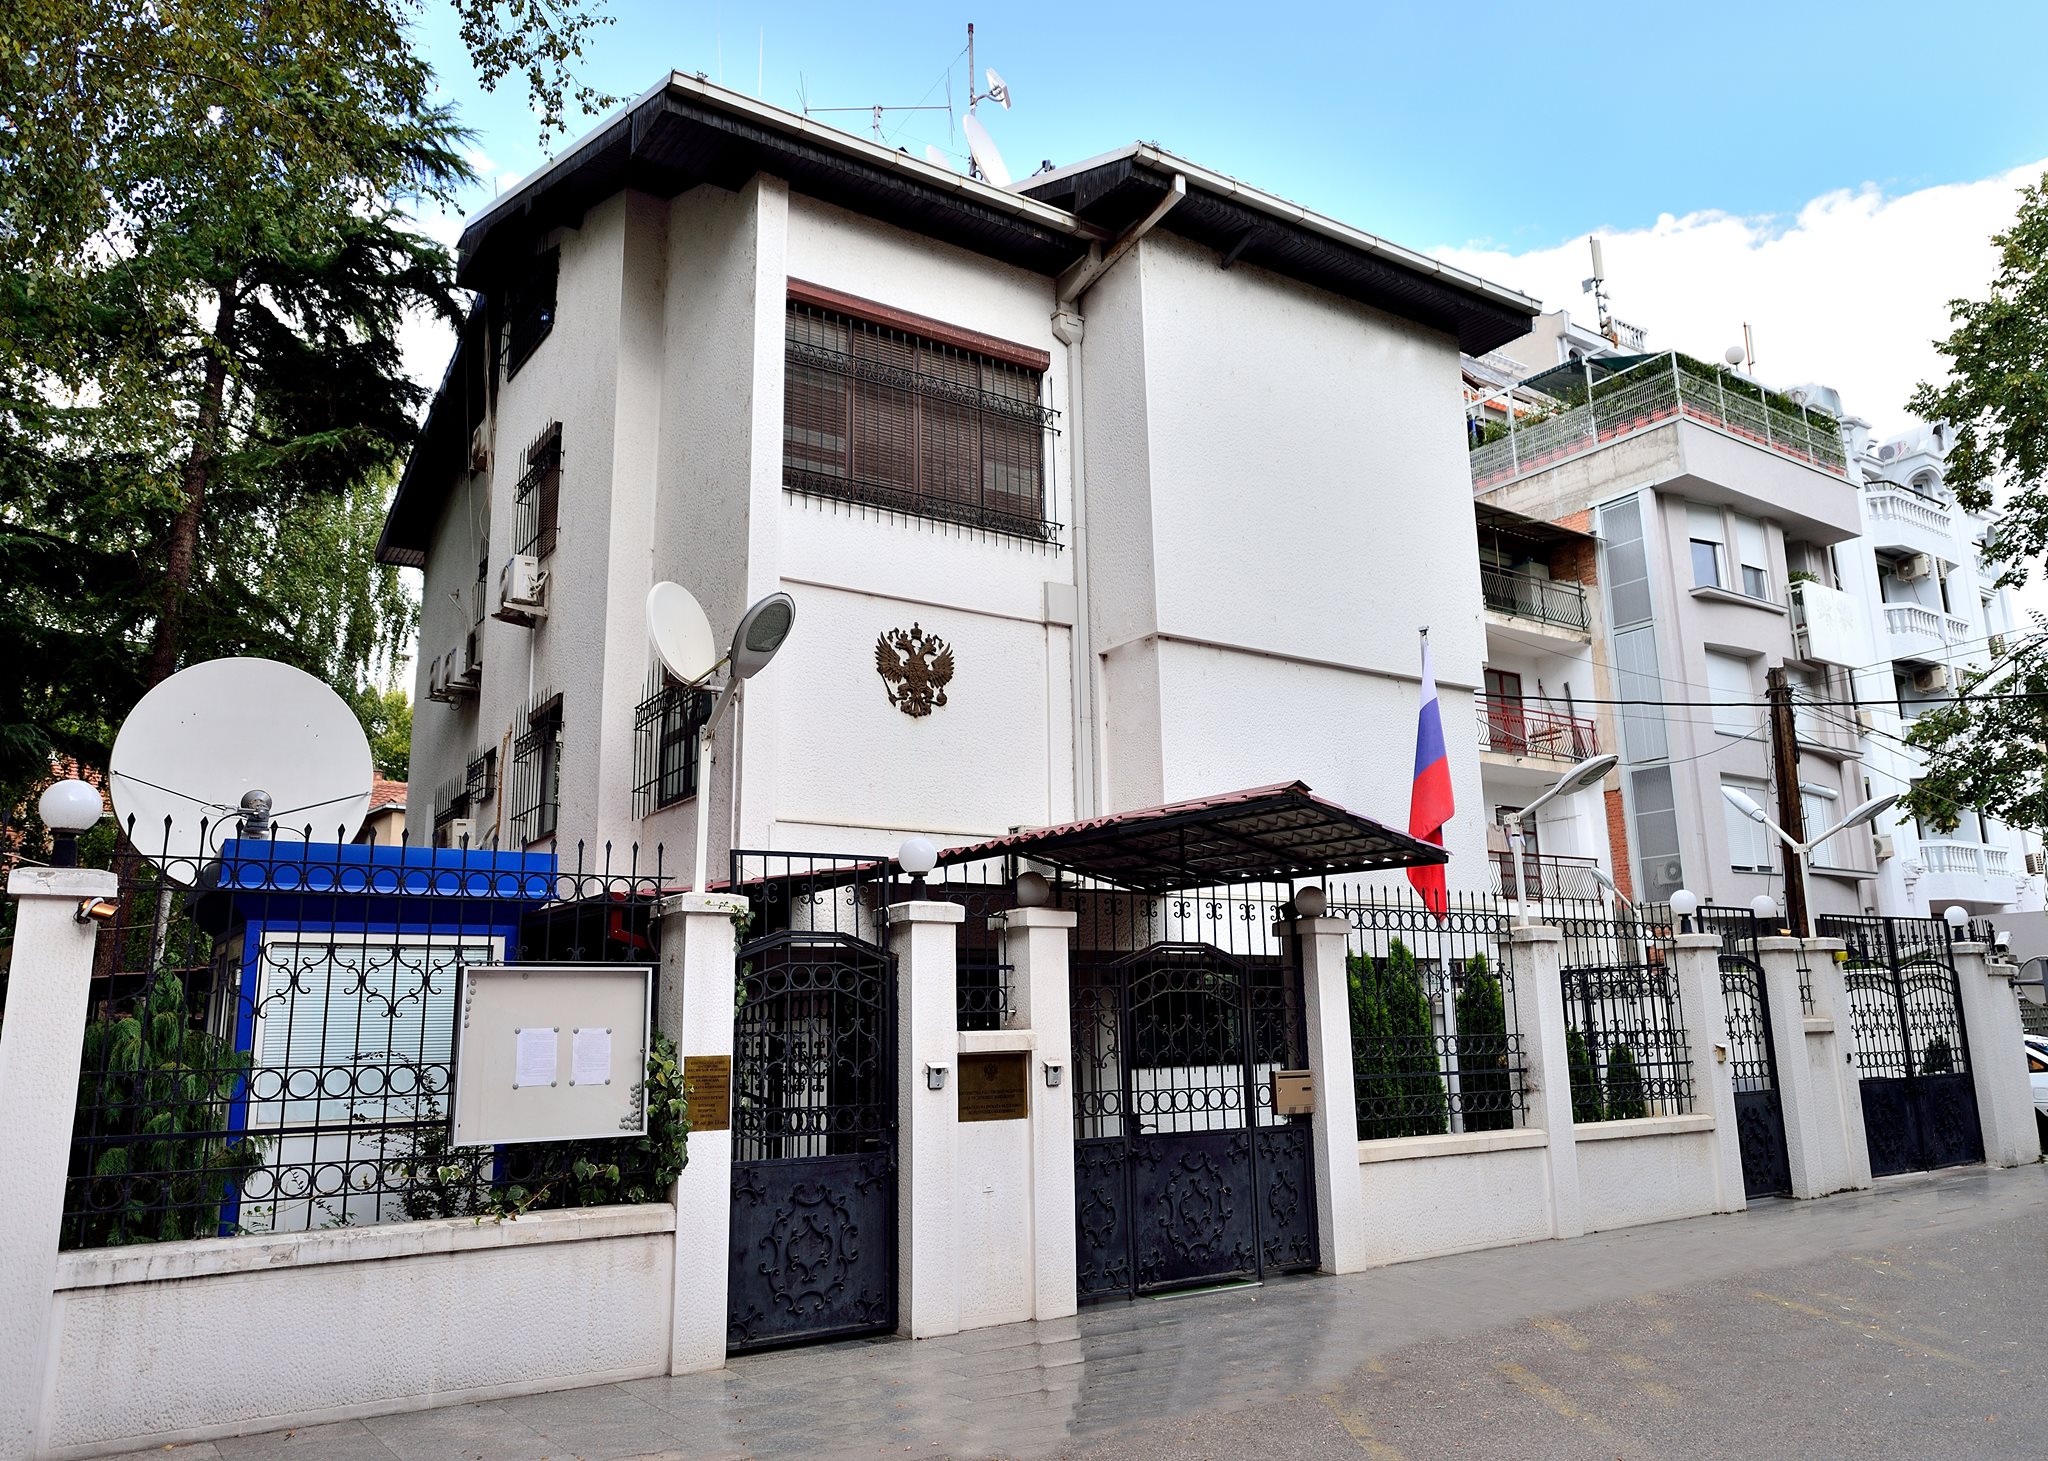 Ρωσική πρεσβεία στα Σκόπια σε Ζ.Ζαέφ:«Αβάσιμες οι δηλώσεις για υποκίνηση βίαιων ενεργειών»